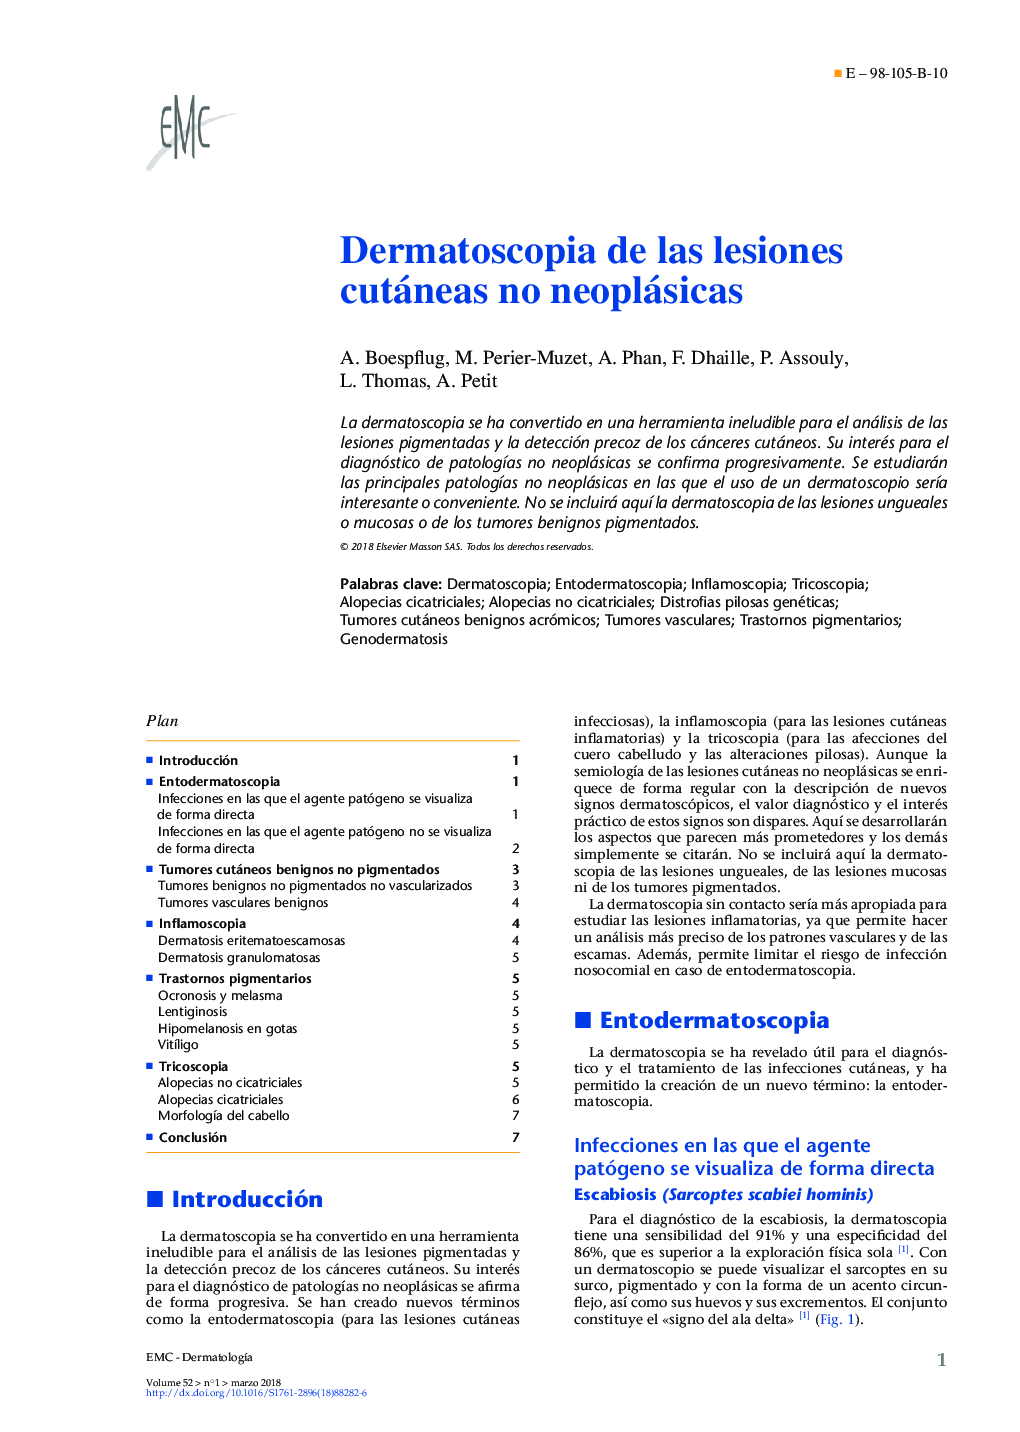 Dermatoscopia de las lesiones cutáneas no neoplásicas